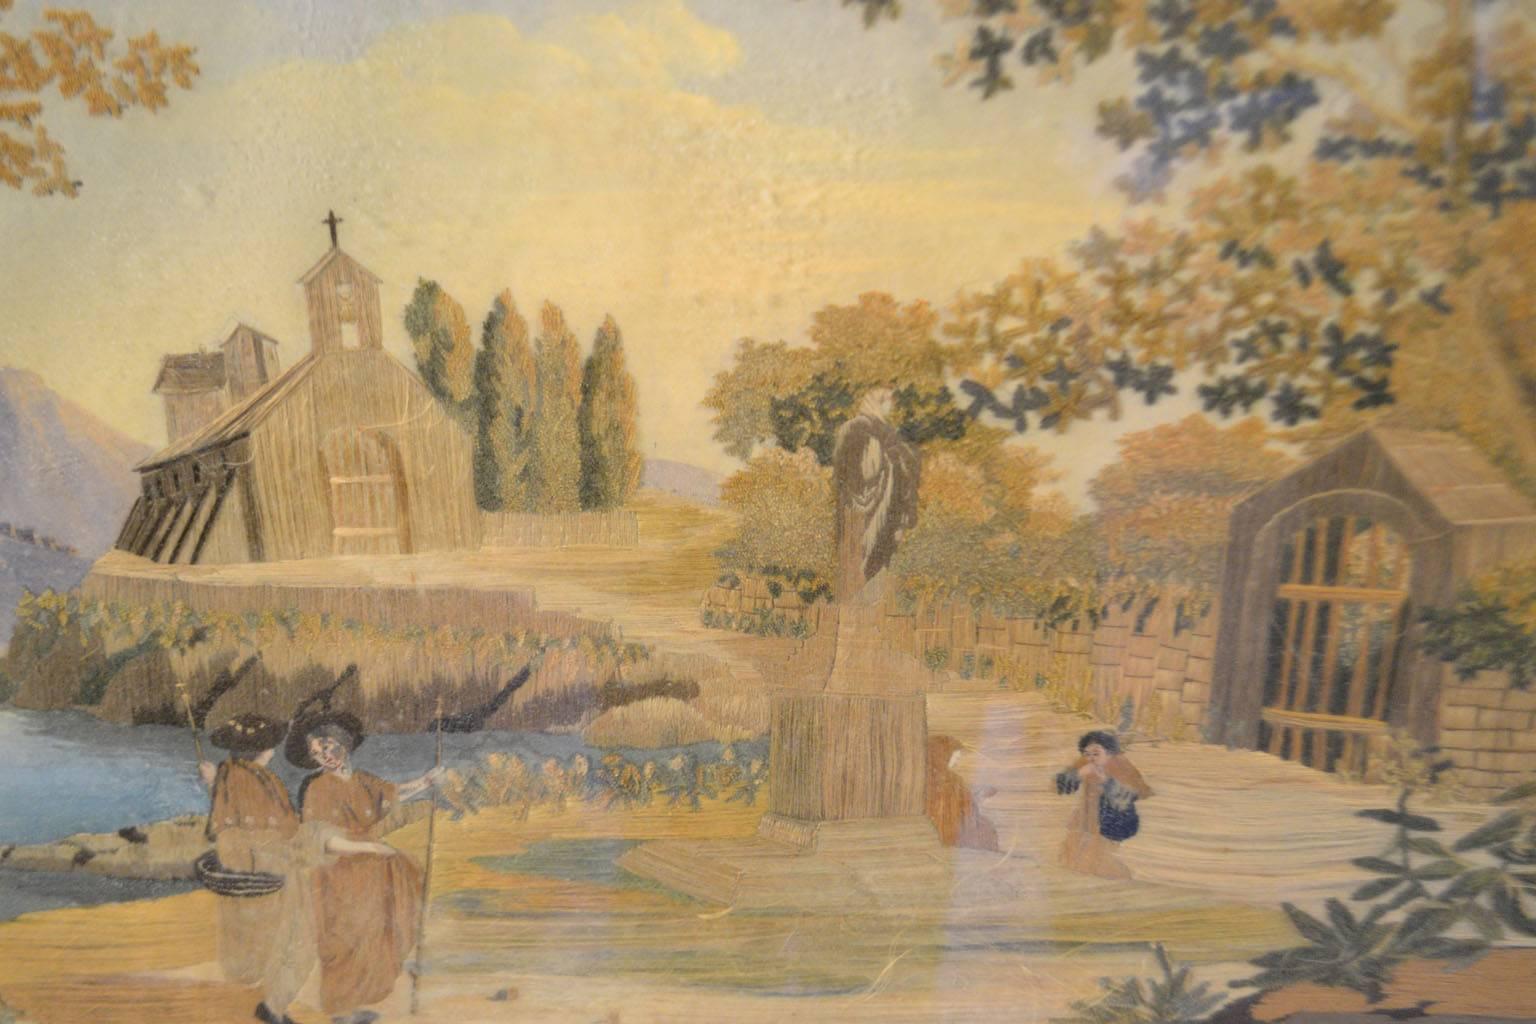 Momento Mori à l'aiguille de style Régence, premier quart du XIXe siècle, britannique, exécuté sur un fond d'aquarelle, représentant un cimetière avec deux personnes en deuil près d'une tombe, deux femmes au premier plan et une chapelle au bord d'un